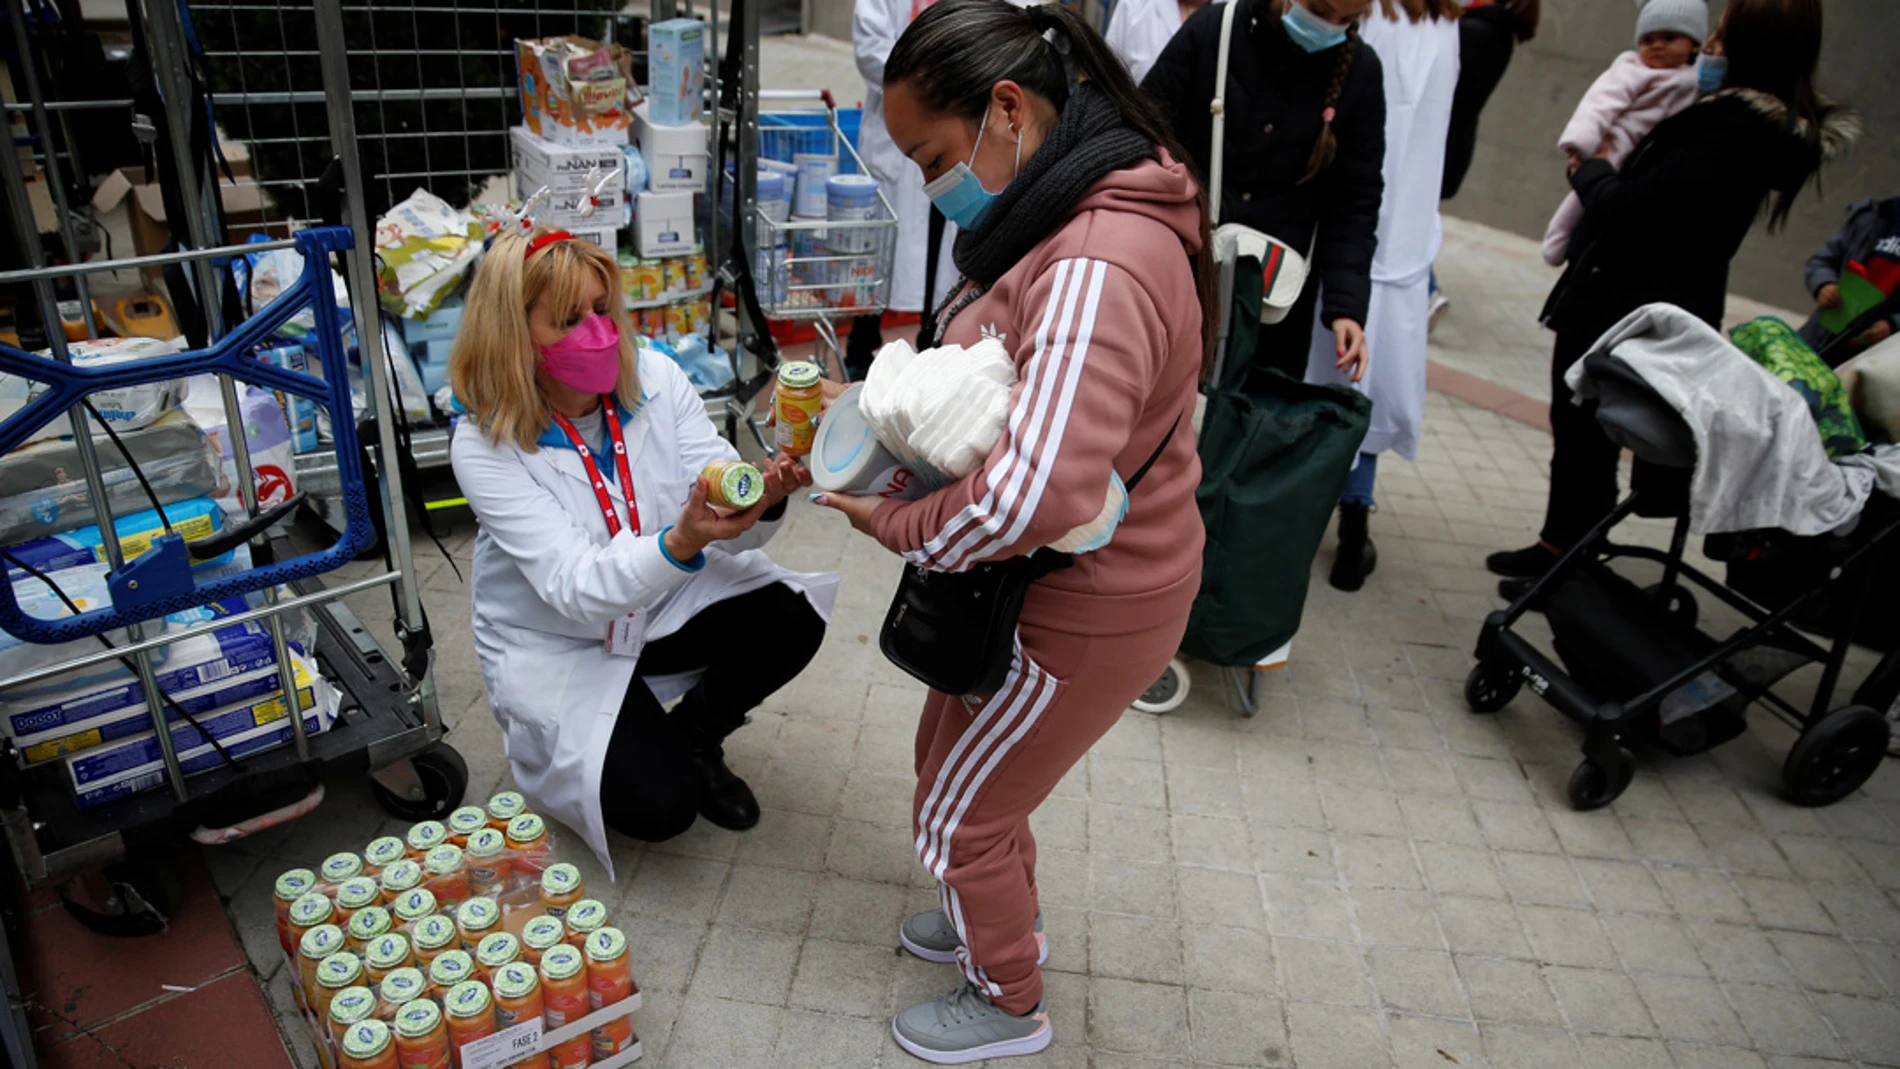 23/12/2021 13:00 (UTC) Crédito: EFE Fuente: EFE/EFE Autor: Diego Fernández Temática: Asuntos sociales Asuntos sociales » Pobreza Imagen de archivo de la Fundación Madrina entregando cestas de alimentos en Madrid.